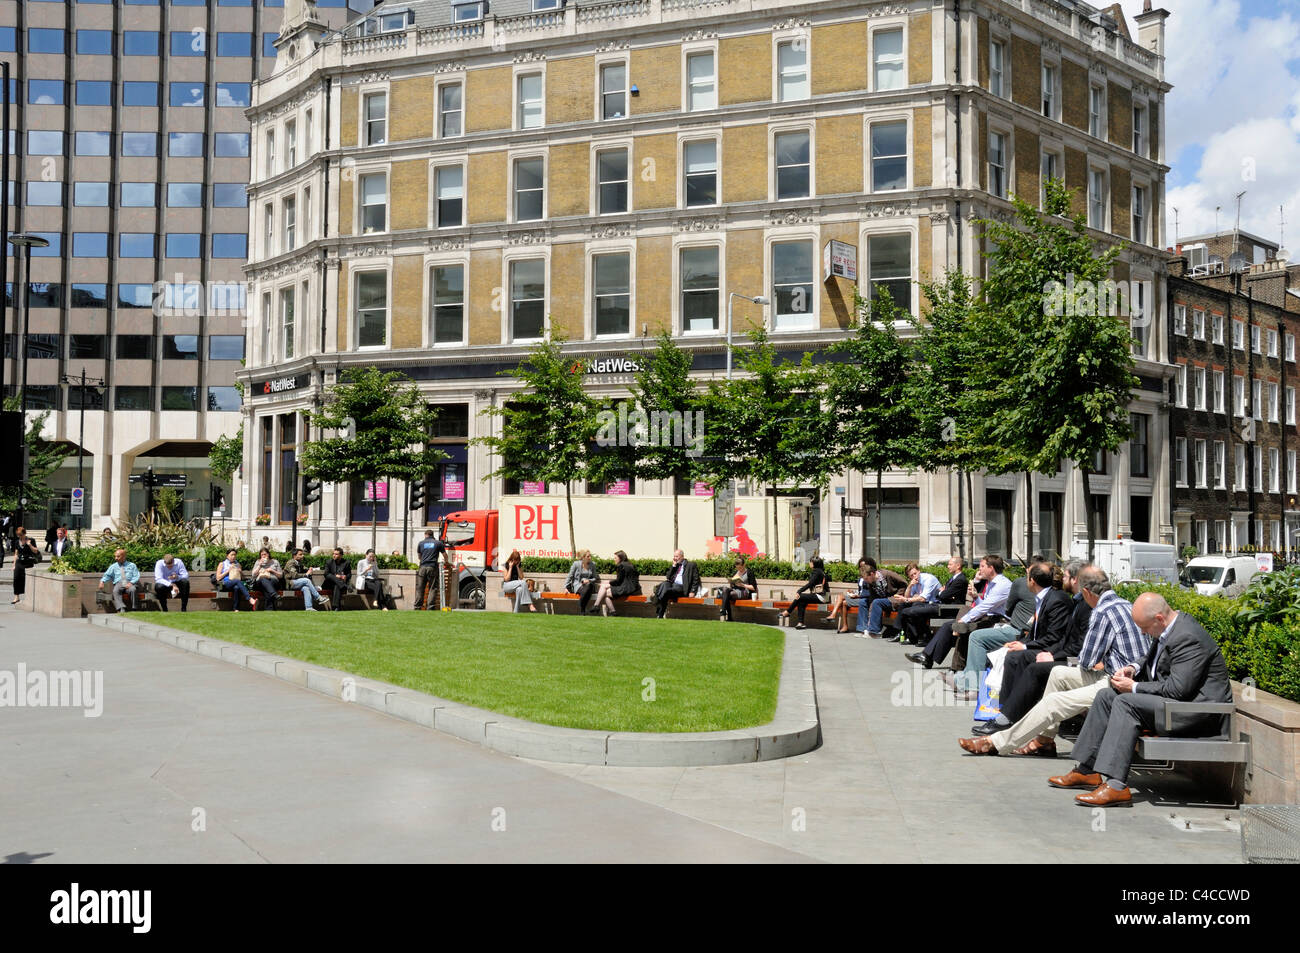 La gente disfruta del sol en una nueva y moderna zona de asientos públicos en forma de triángulo o espacio abierto Holborn Circus London Inglaterra Gran Bretaña UK Foto de stock